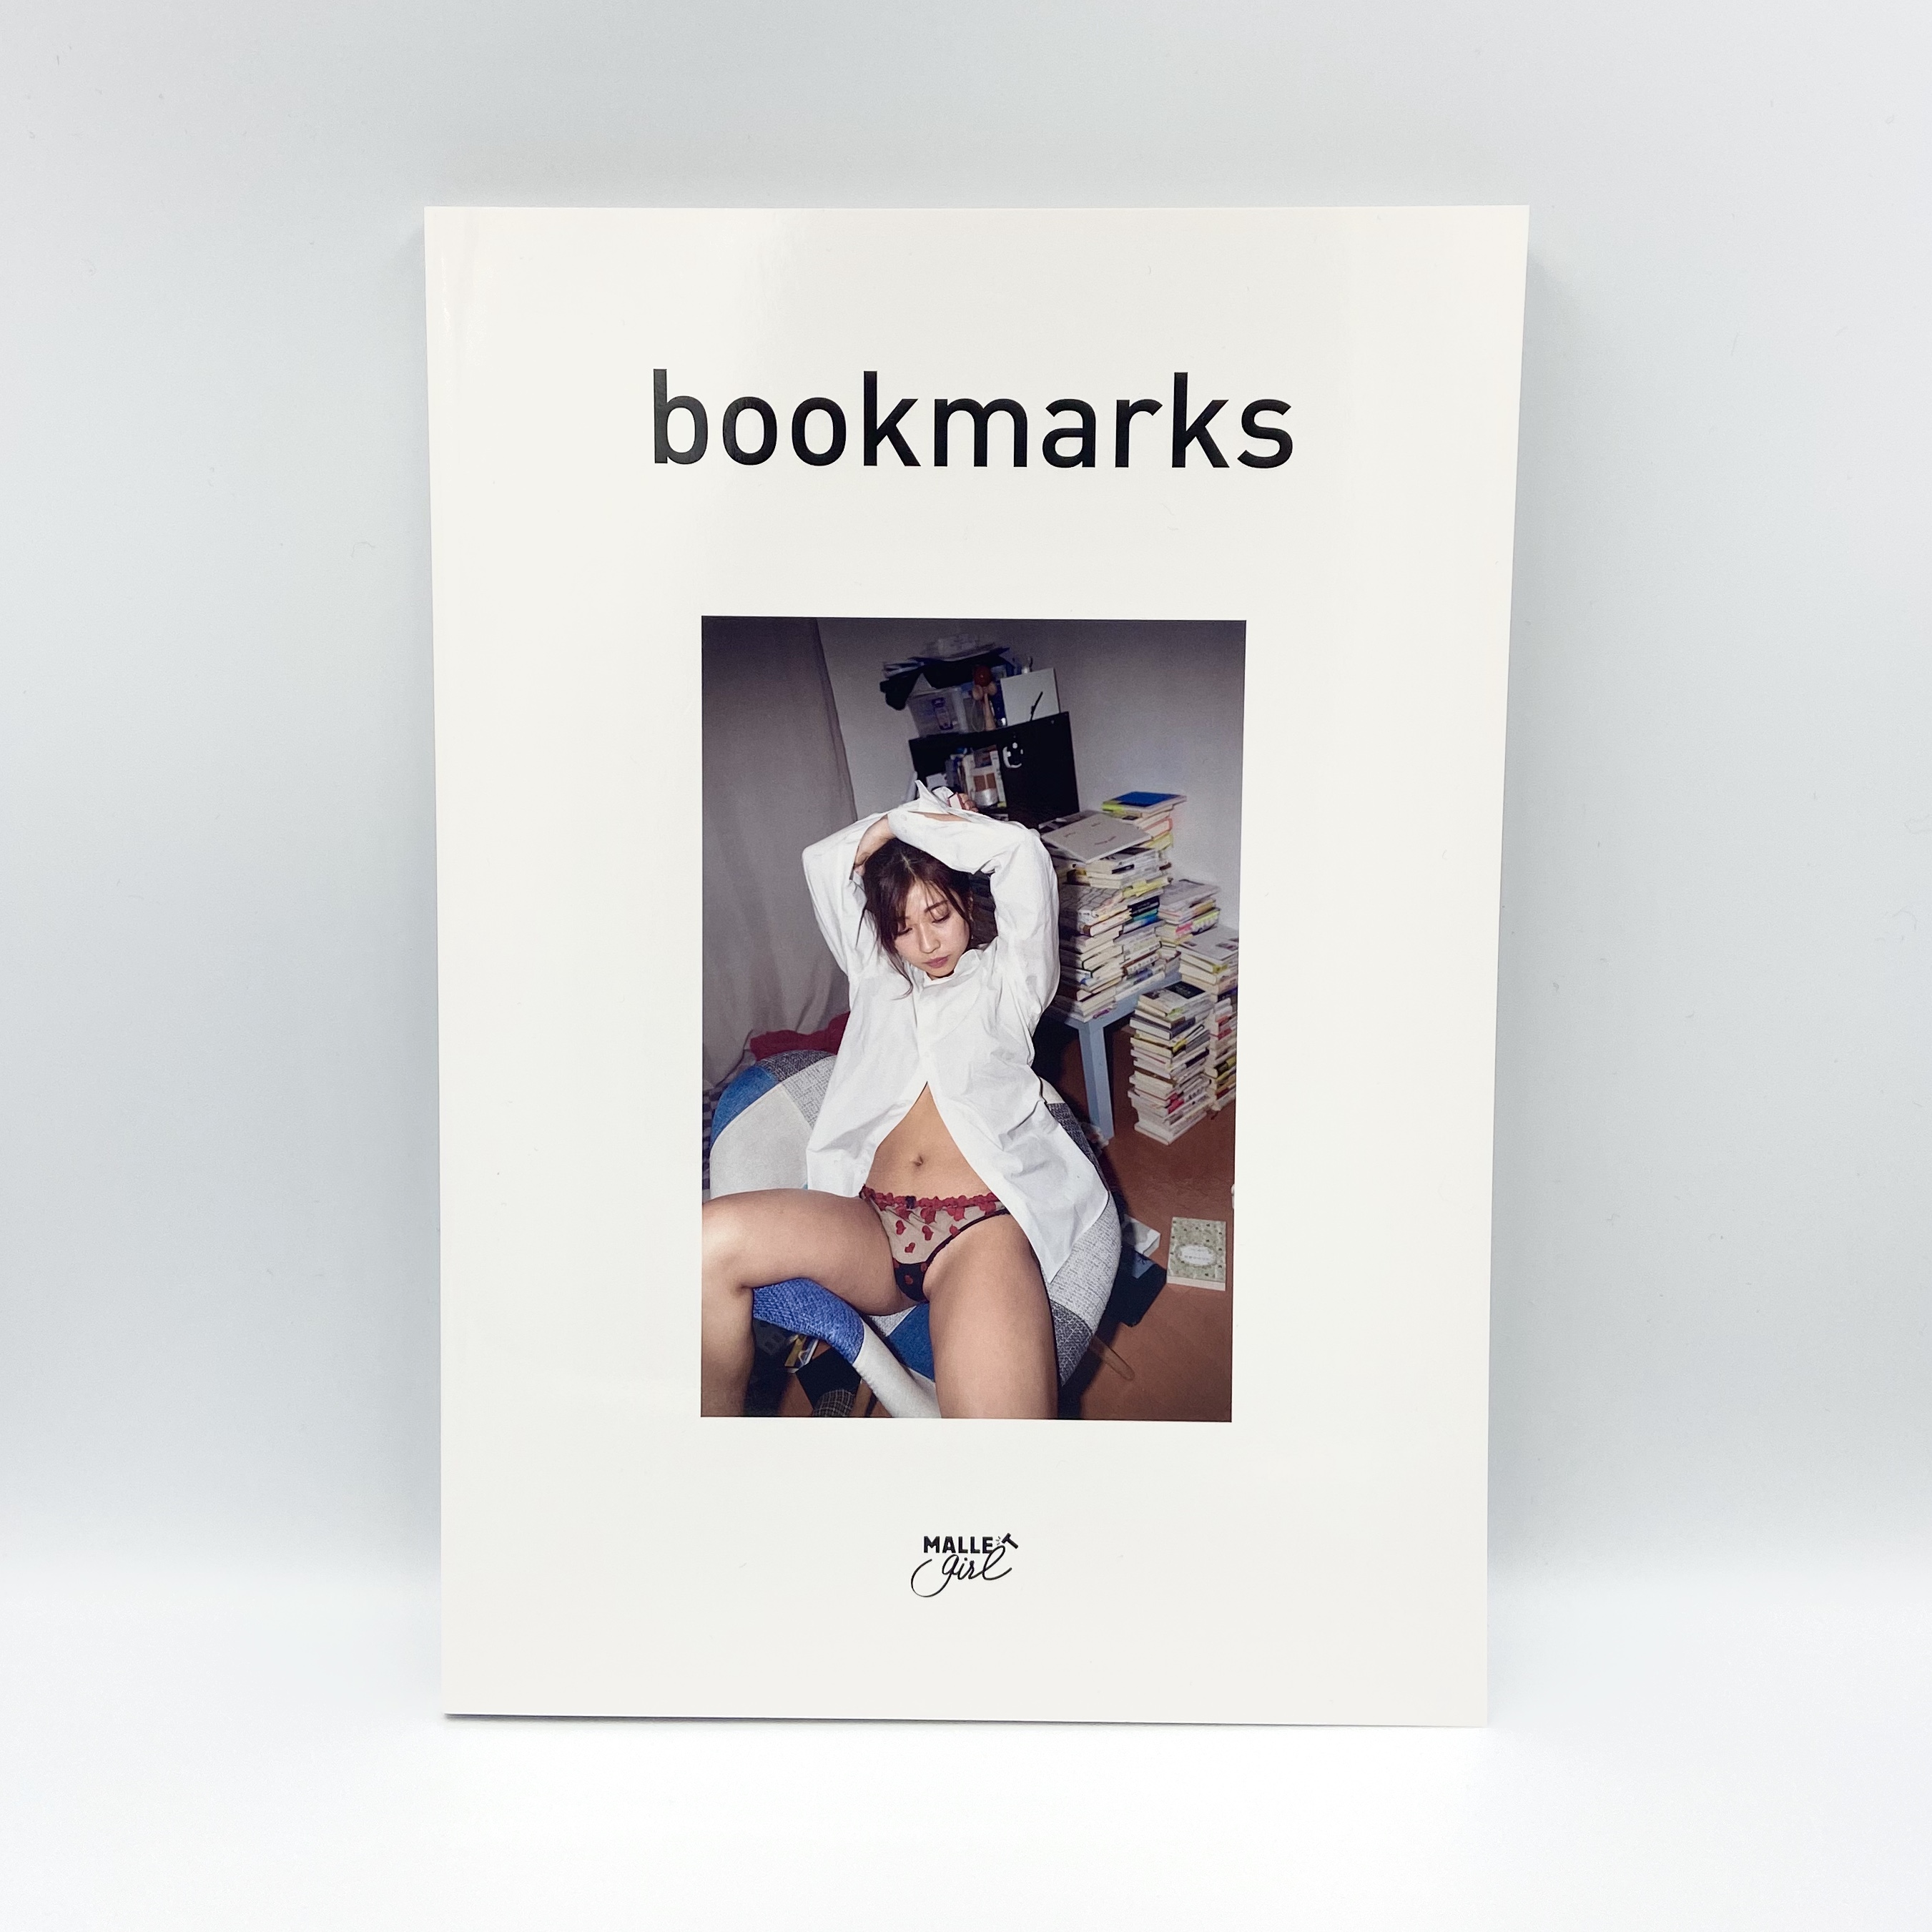 大貫彩香特別限定フォトブック 「bookmarks」300部限定オークション 